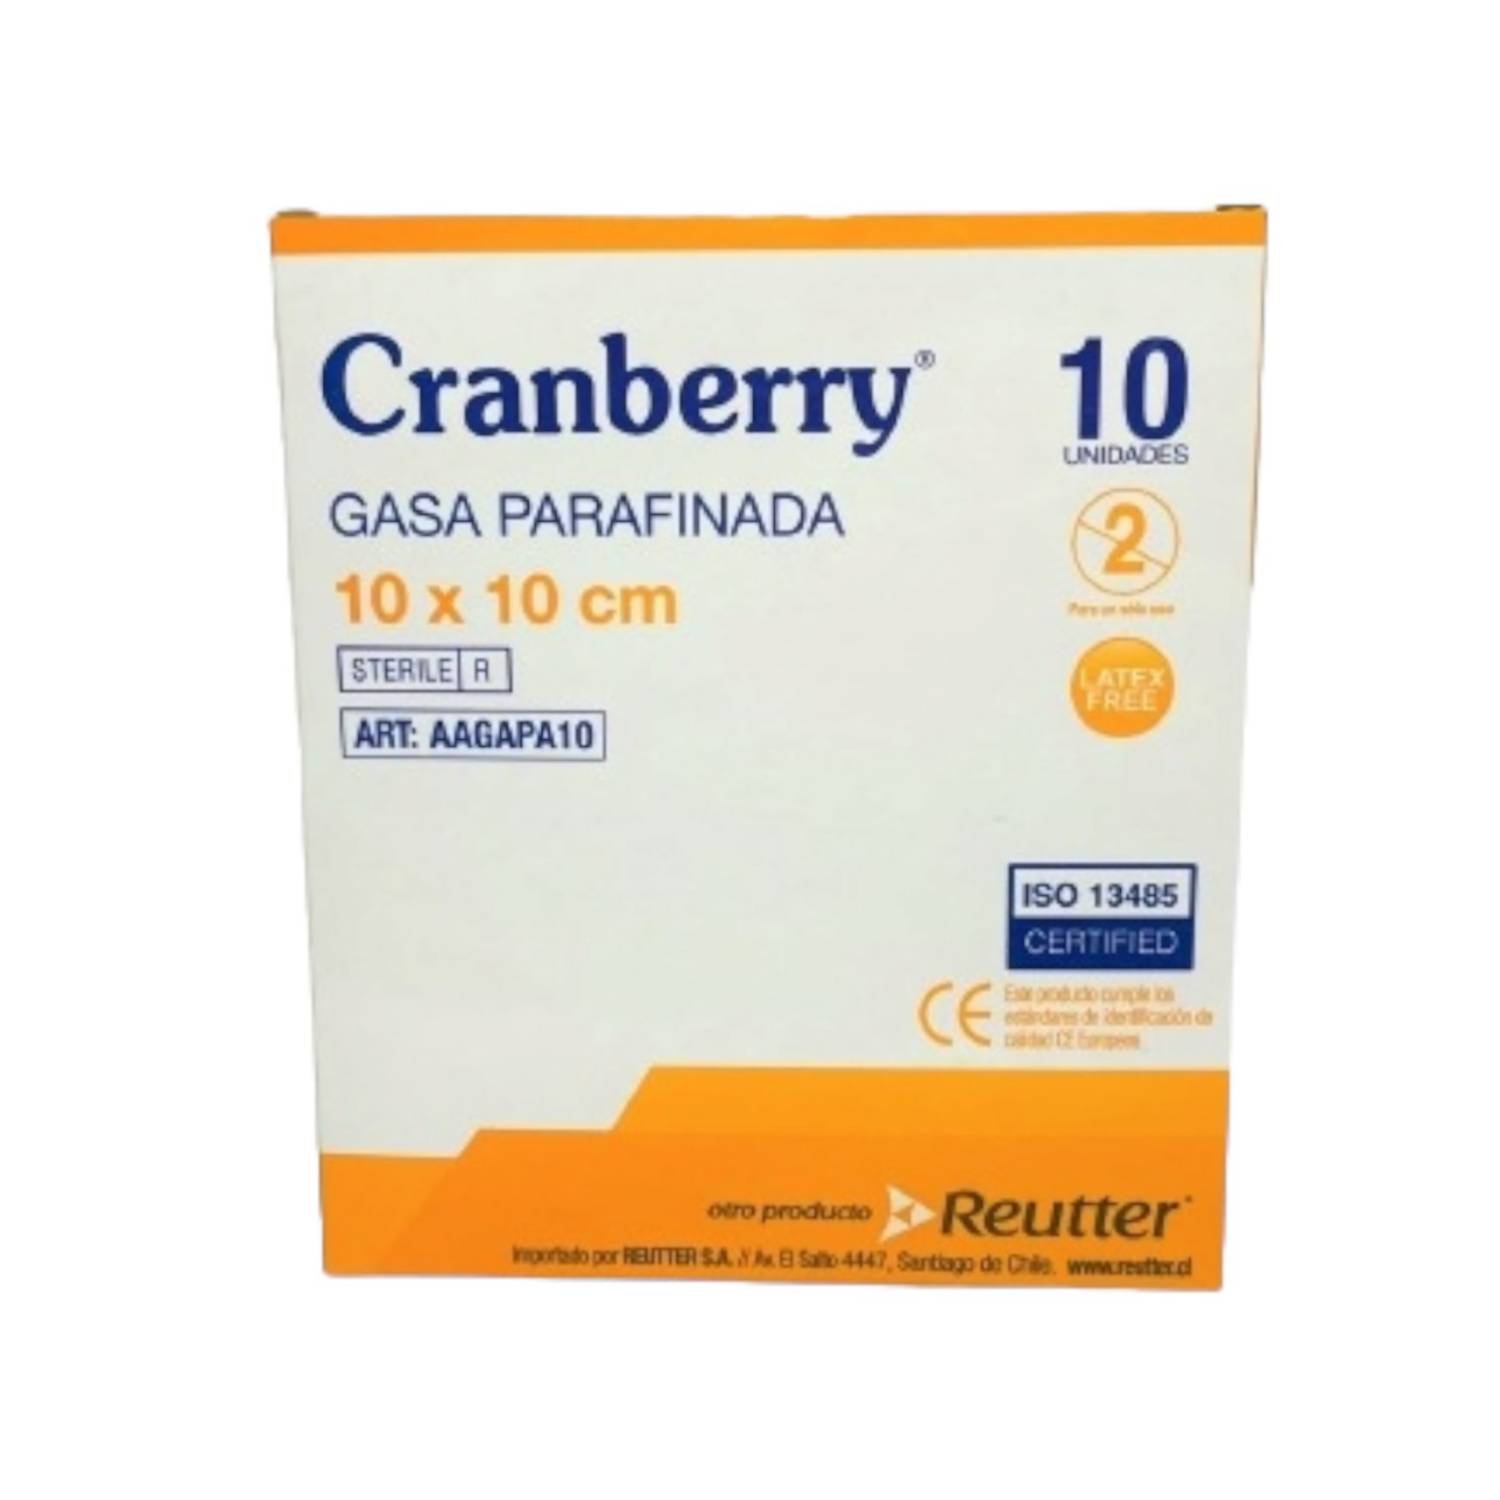 Caja de Gasa Parafinada 10x10 Cranberry (Caja 10 Unidades)